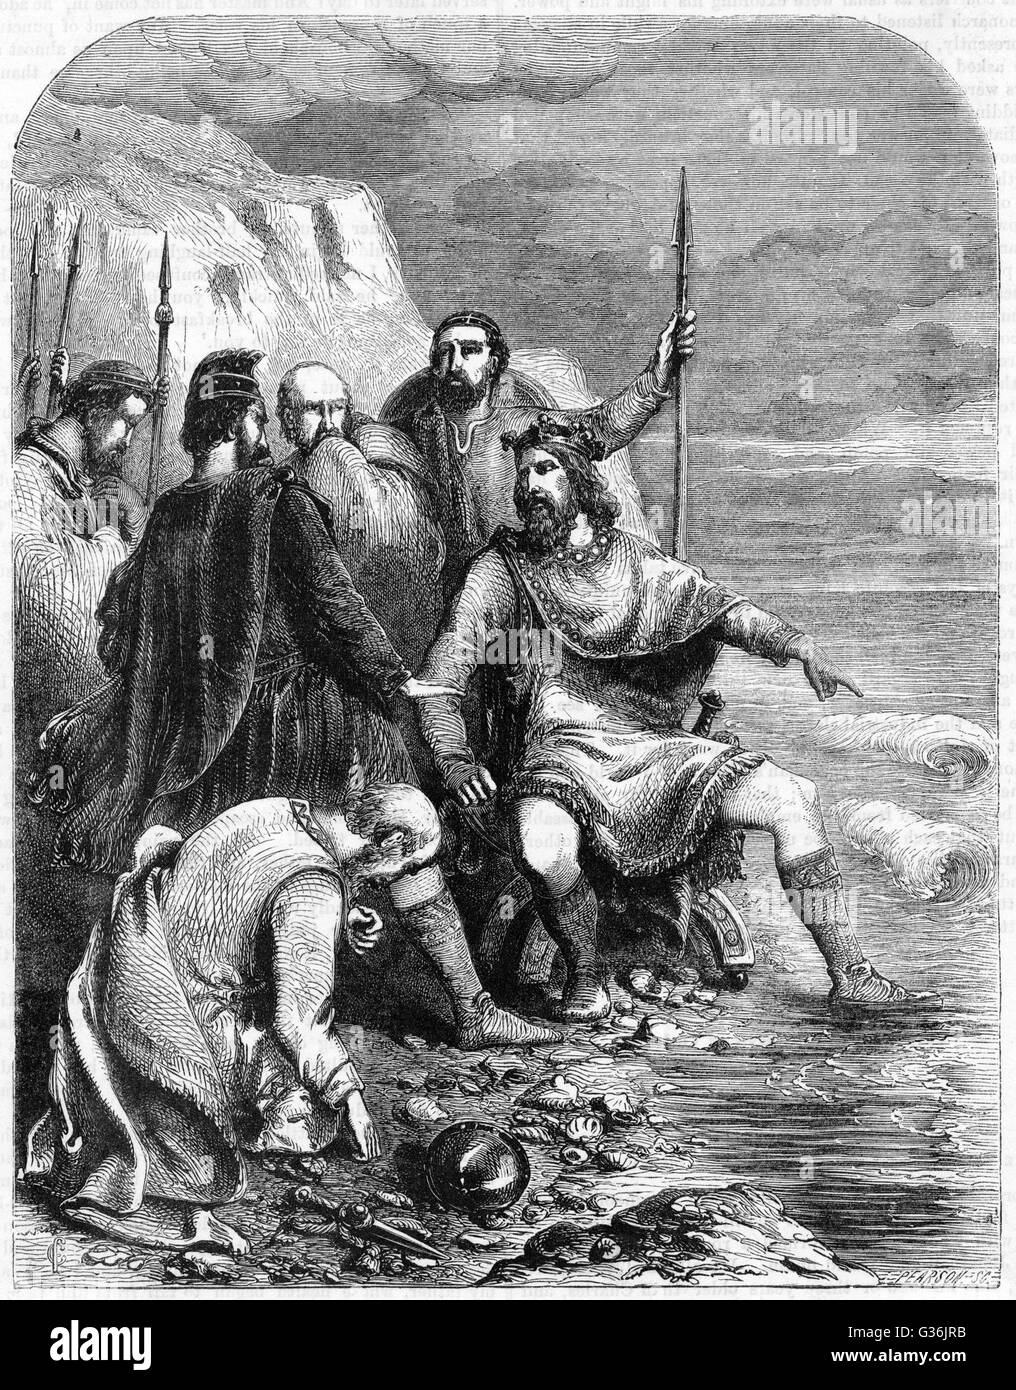 König Canute von England (1016-1035) und Dänemark (1018-1035) bekommt seine Füße eher nass als er versucht, die Wellen zu Befehlen!  Die Geschichte möglicherweise apokryphe, und einige Historiker glauben, dass er die Veranstaltung, um seine sycophantic Höflinge zu zeigen, dass e inszeniert Stockfoto